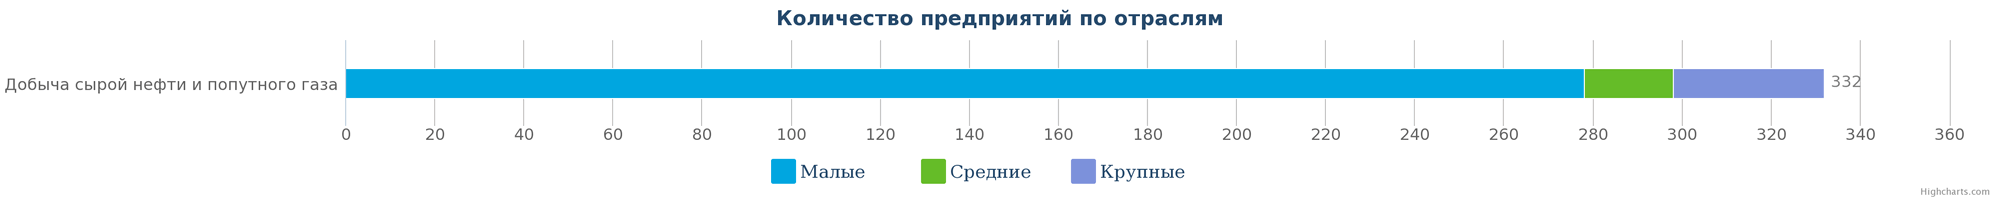 Количество компаний, занимающиеся добычей сырой нефти и попутного газа в Казахстане по размерам предприятия на 09.01.2017